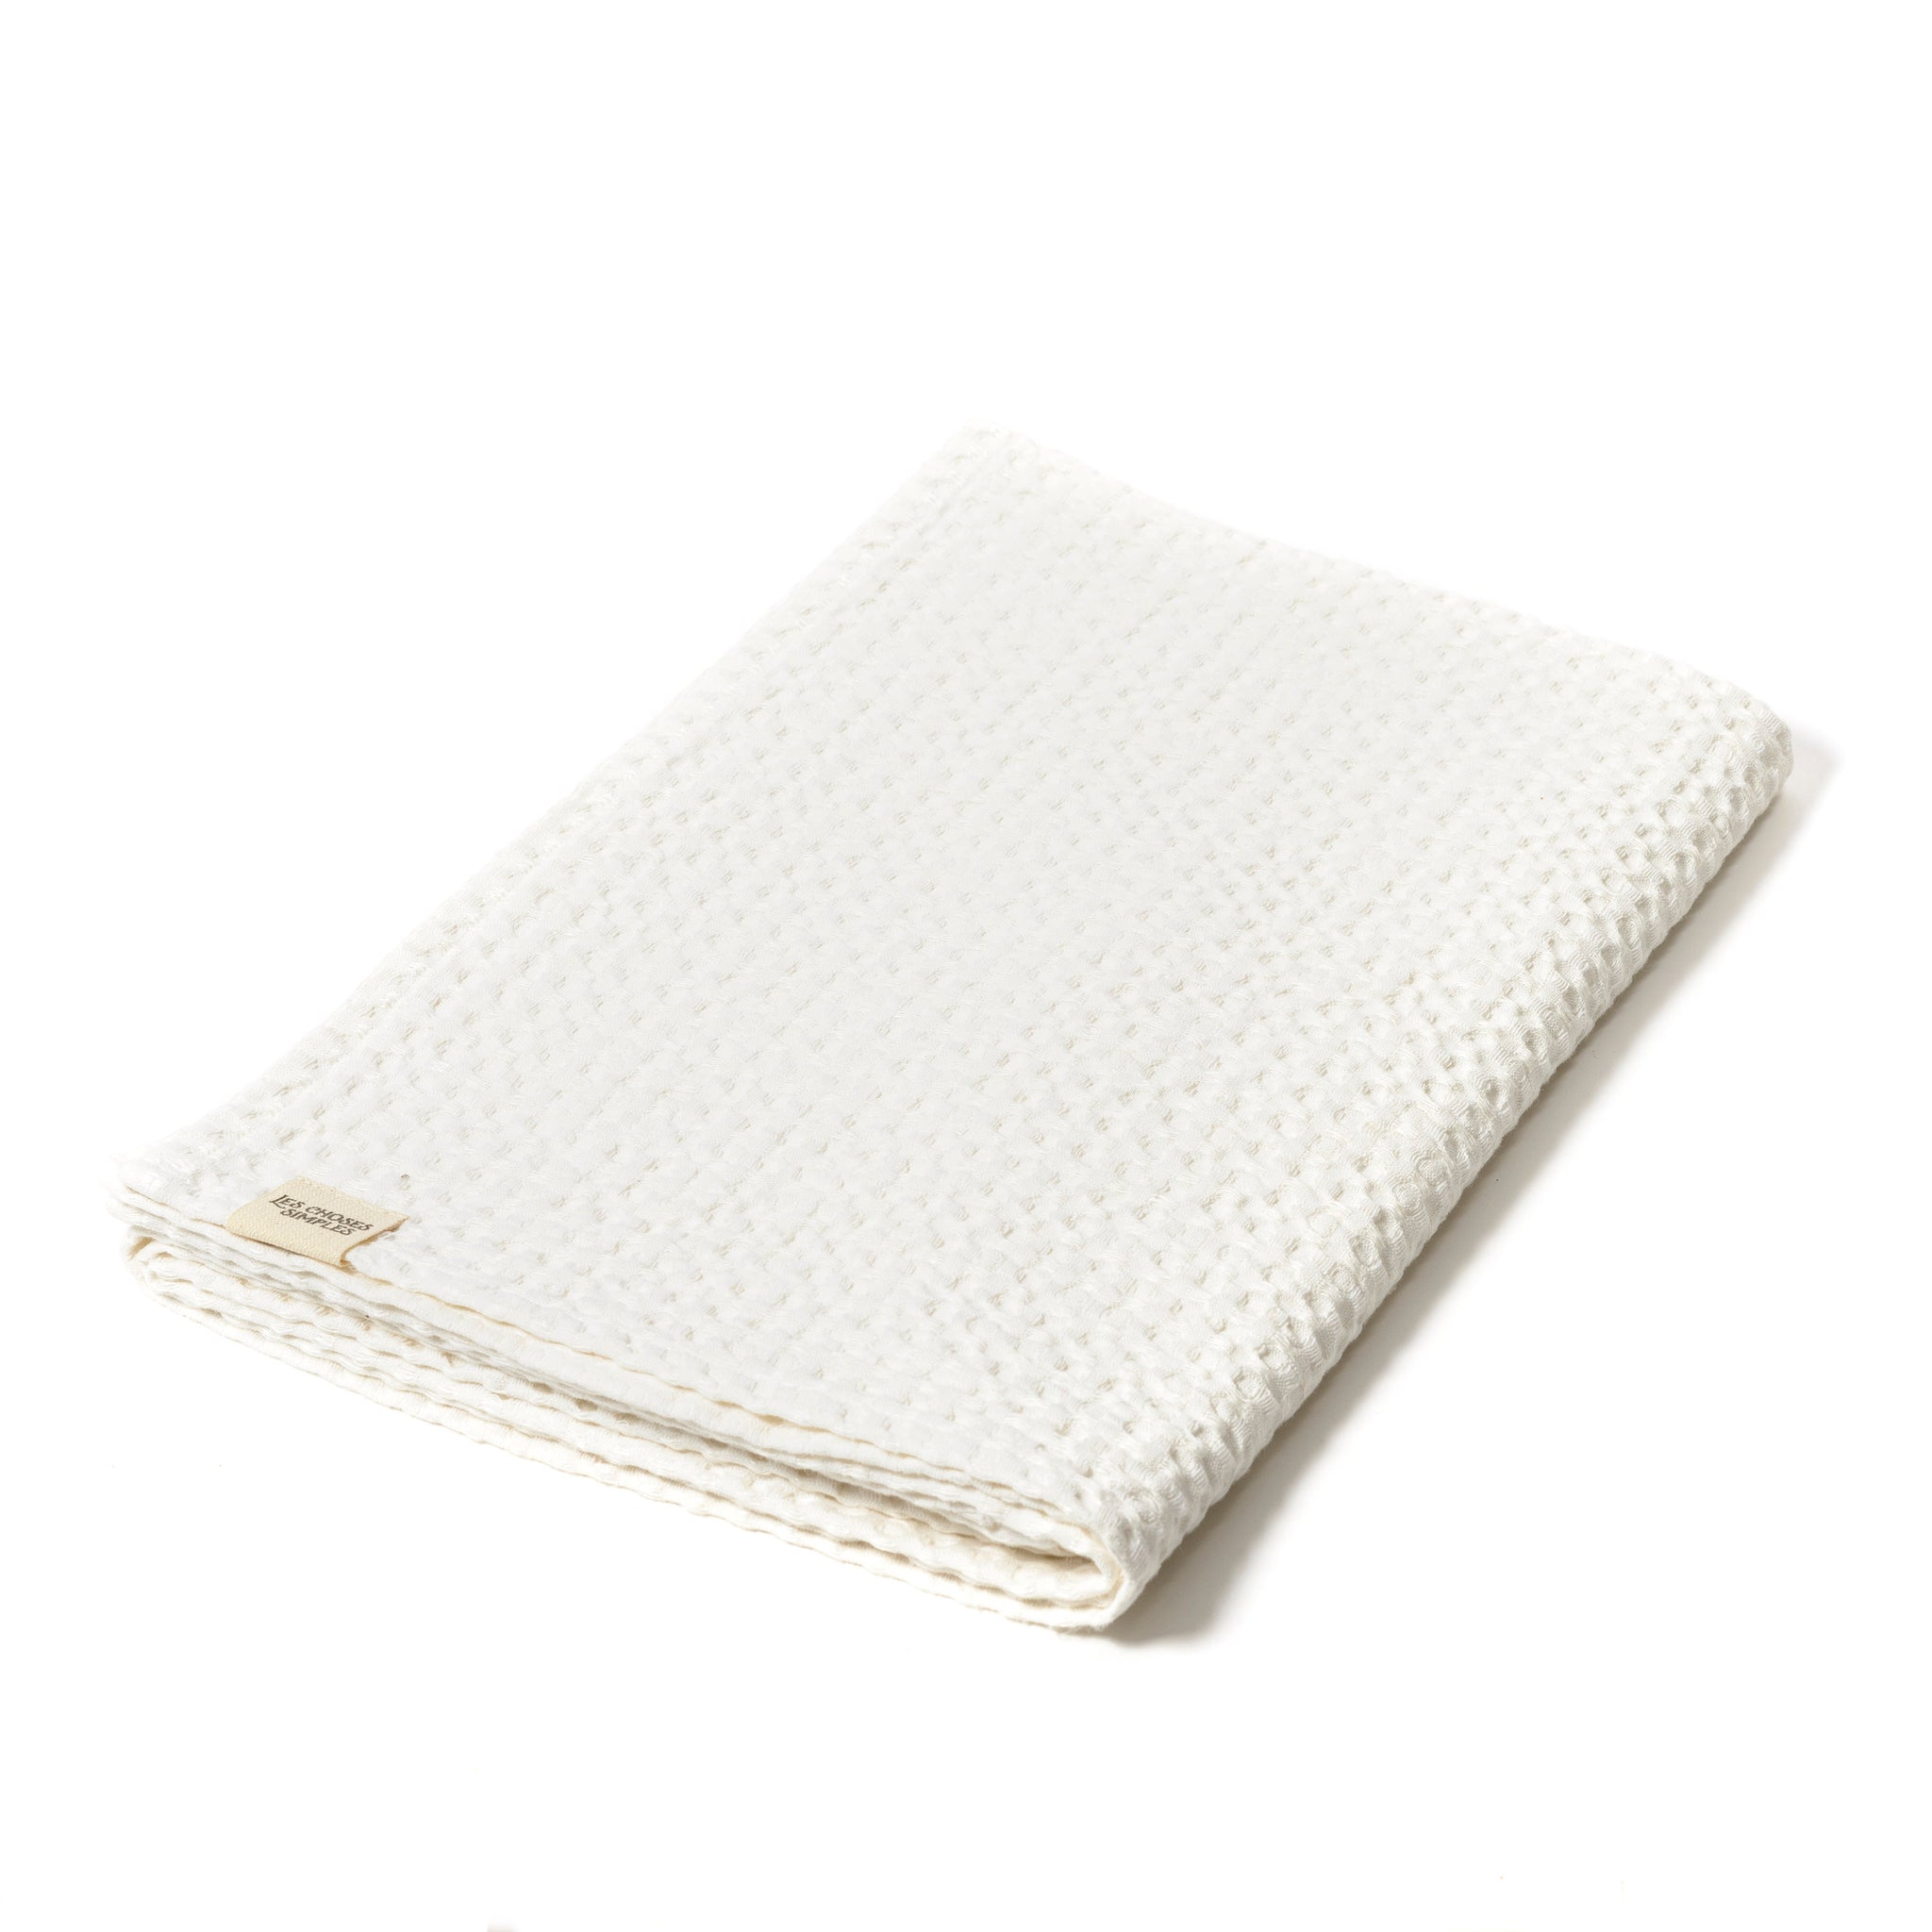 Honeycomb Linen & Cotton Towel "White" 70x140